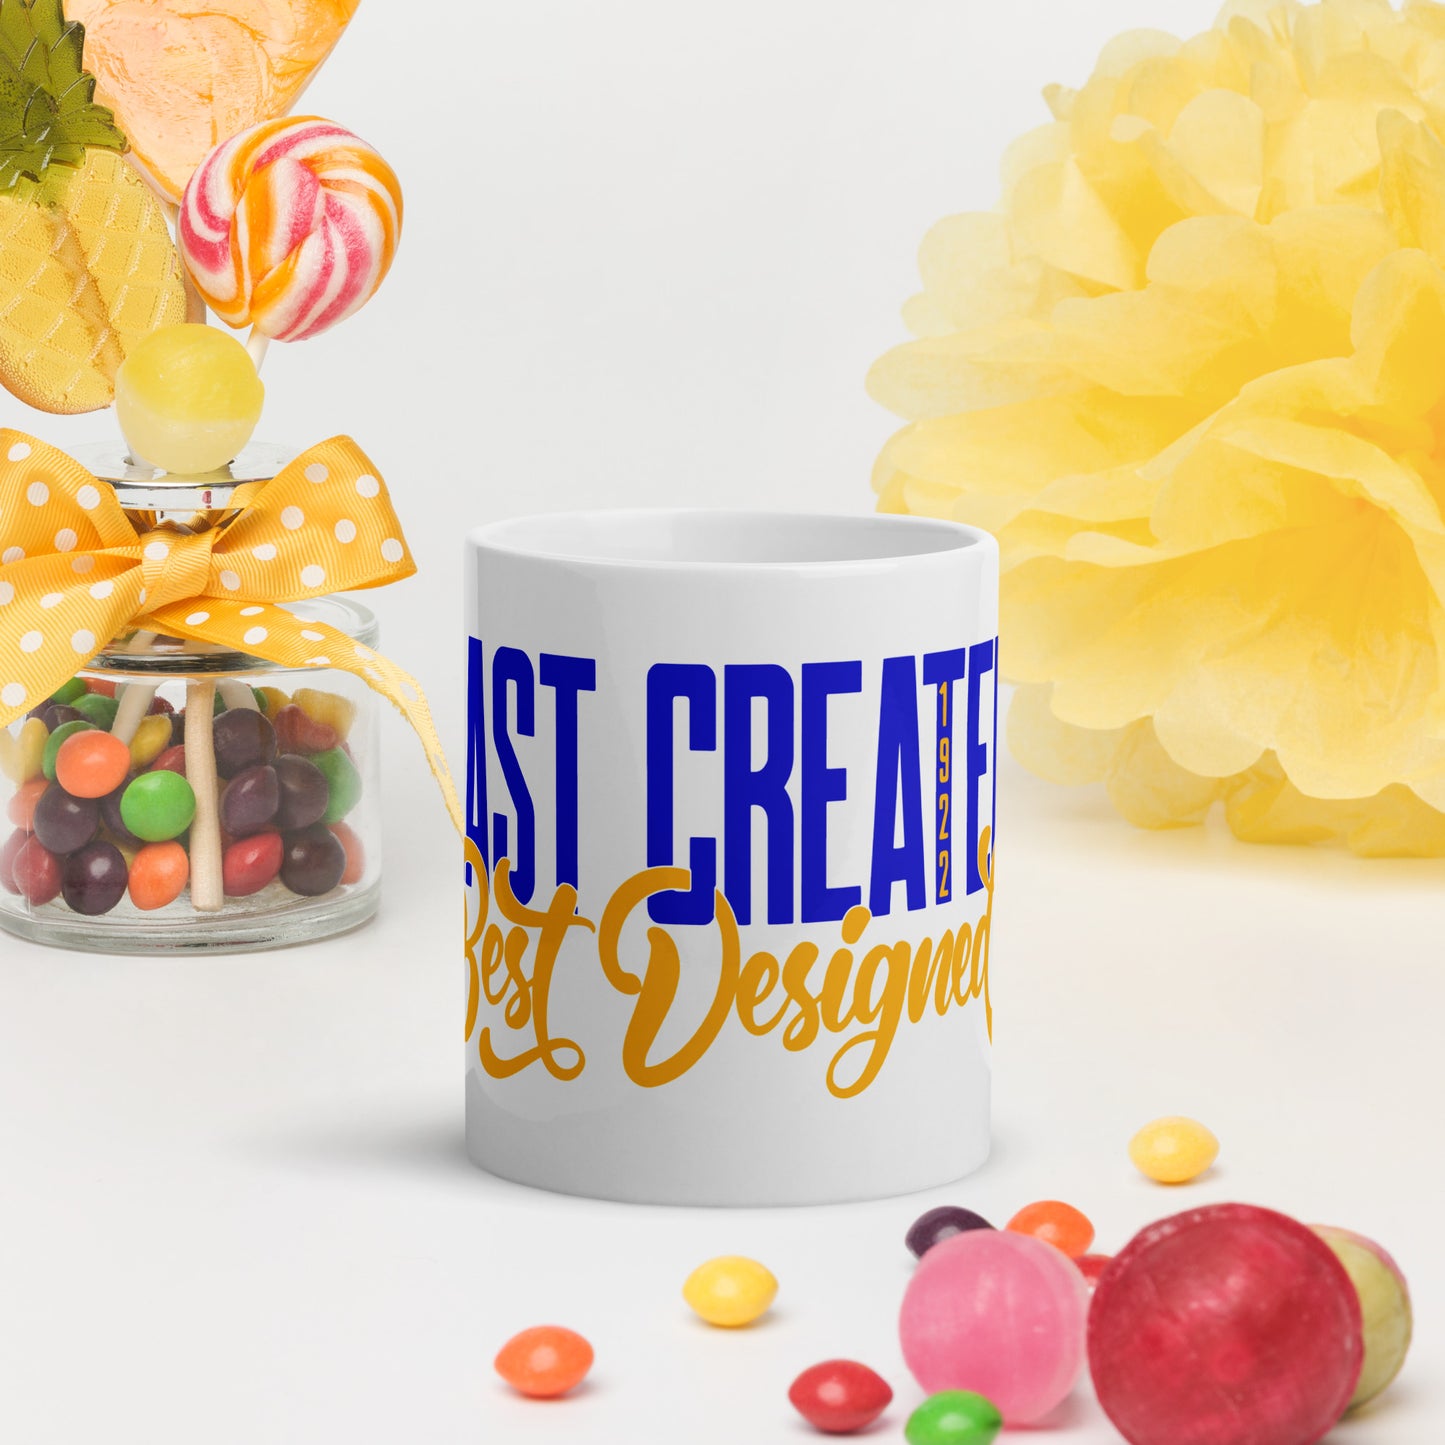 Last Created Best Designed Mug